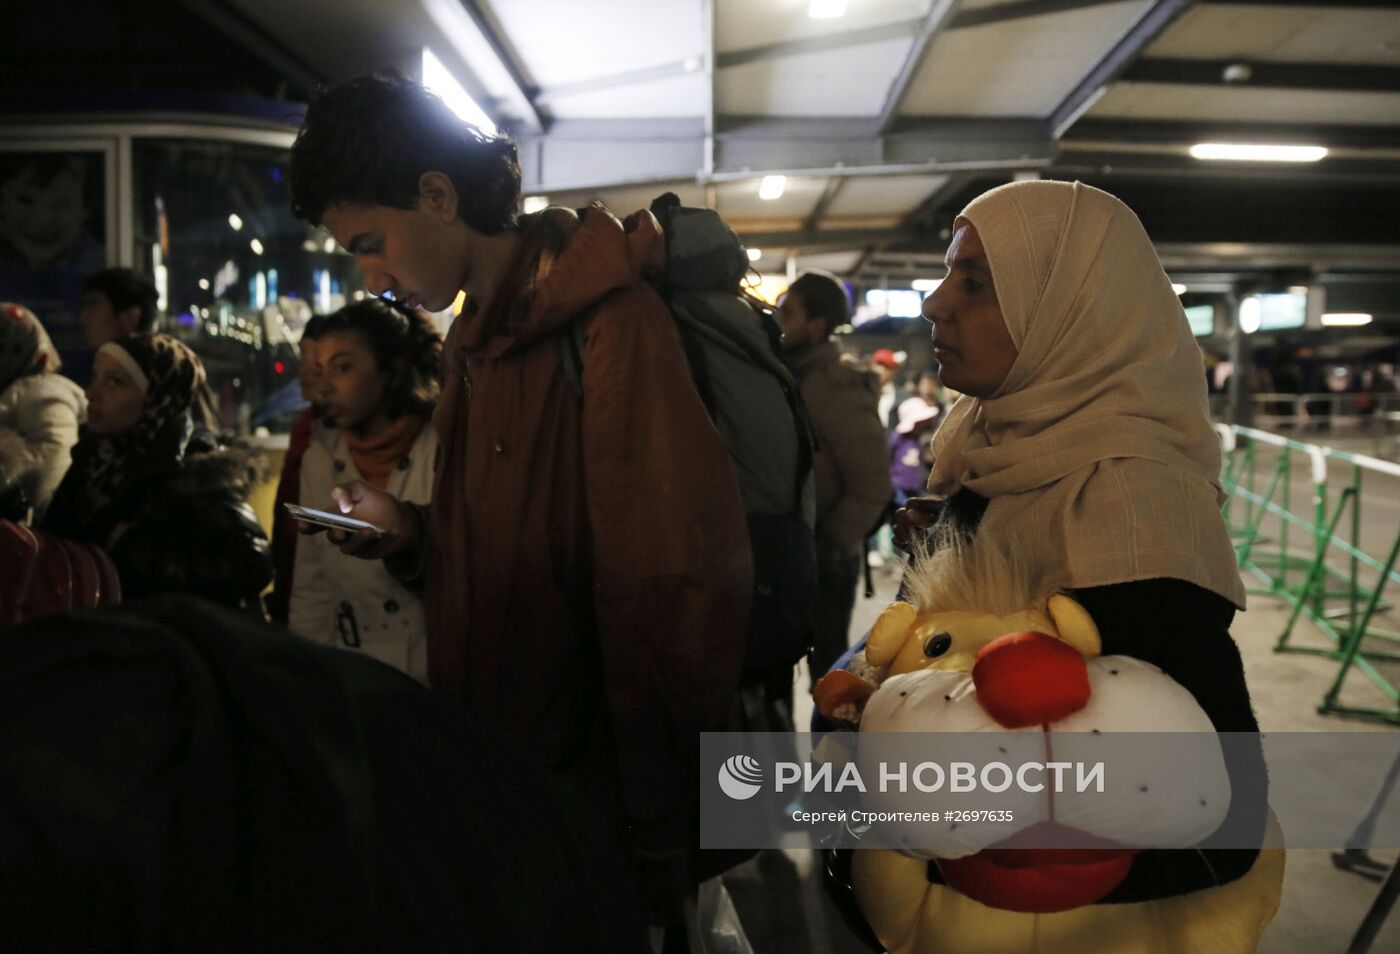 Беженцы с Ближнего Востока в Мюнхене